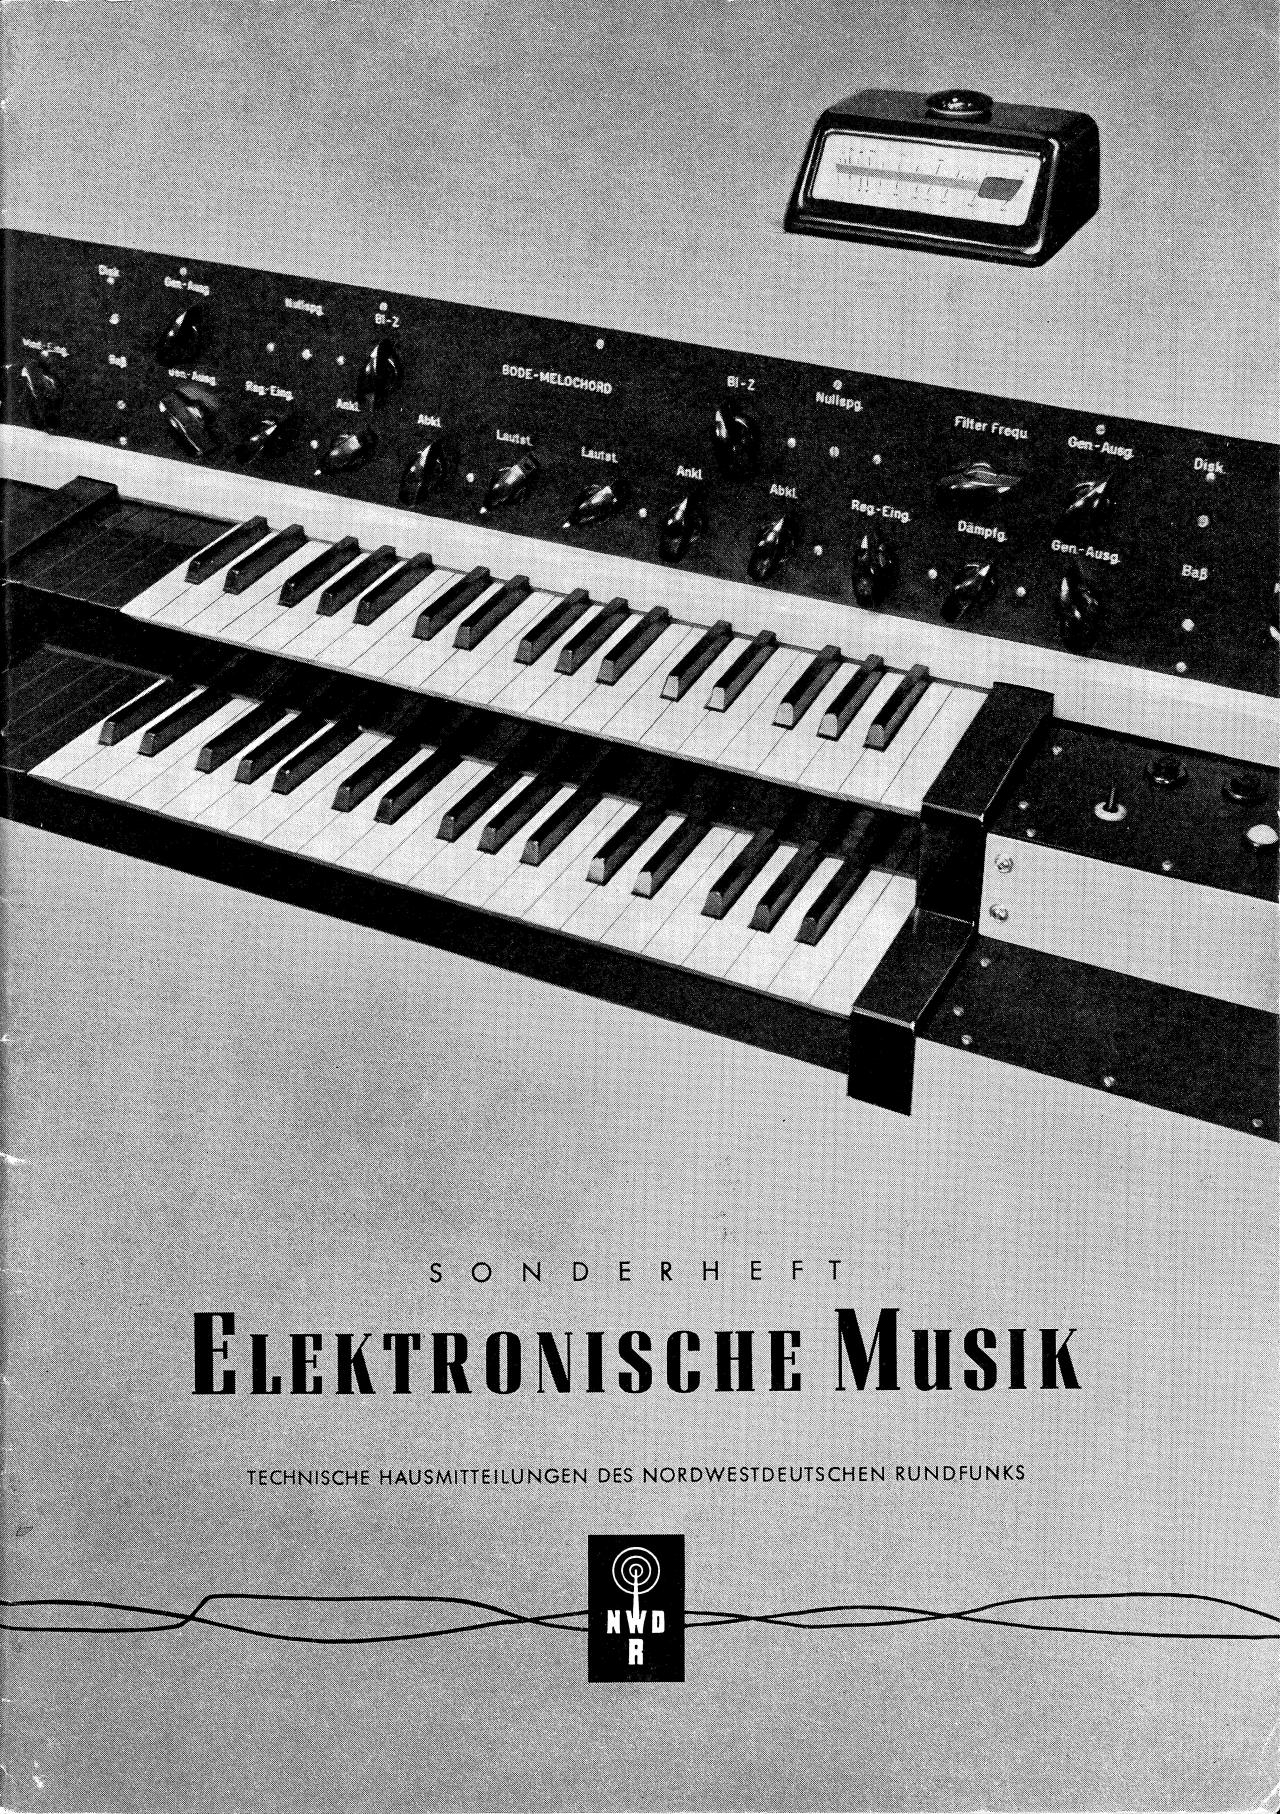 Harald Bode: »Das Melochord des Studios für elektronische Musik im Funkhaus Köln« (1954), cover